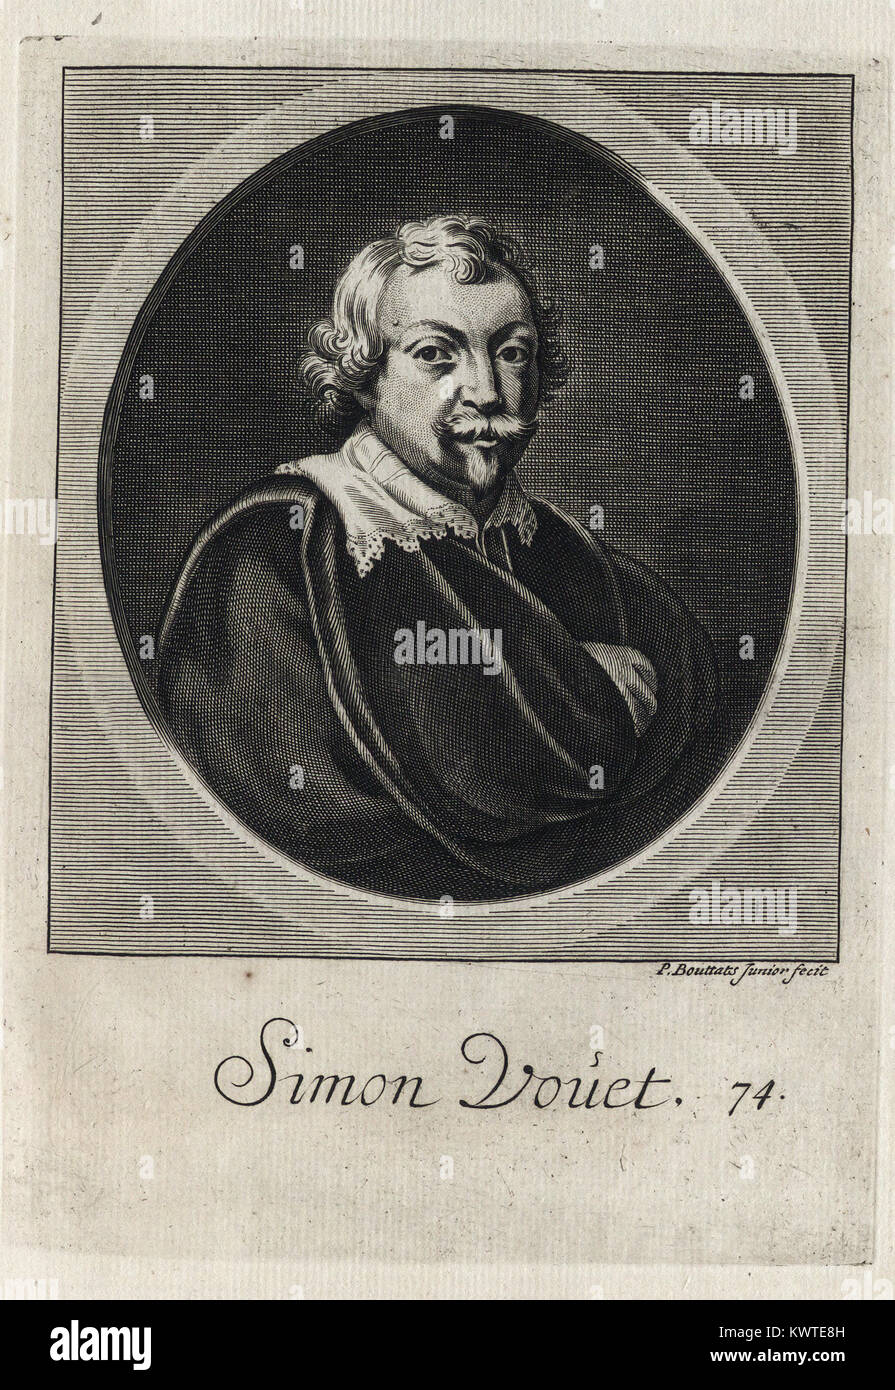 SIMON VOUET -   - Engraving 17th century Stock Photo